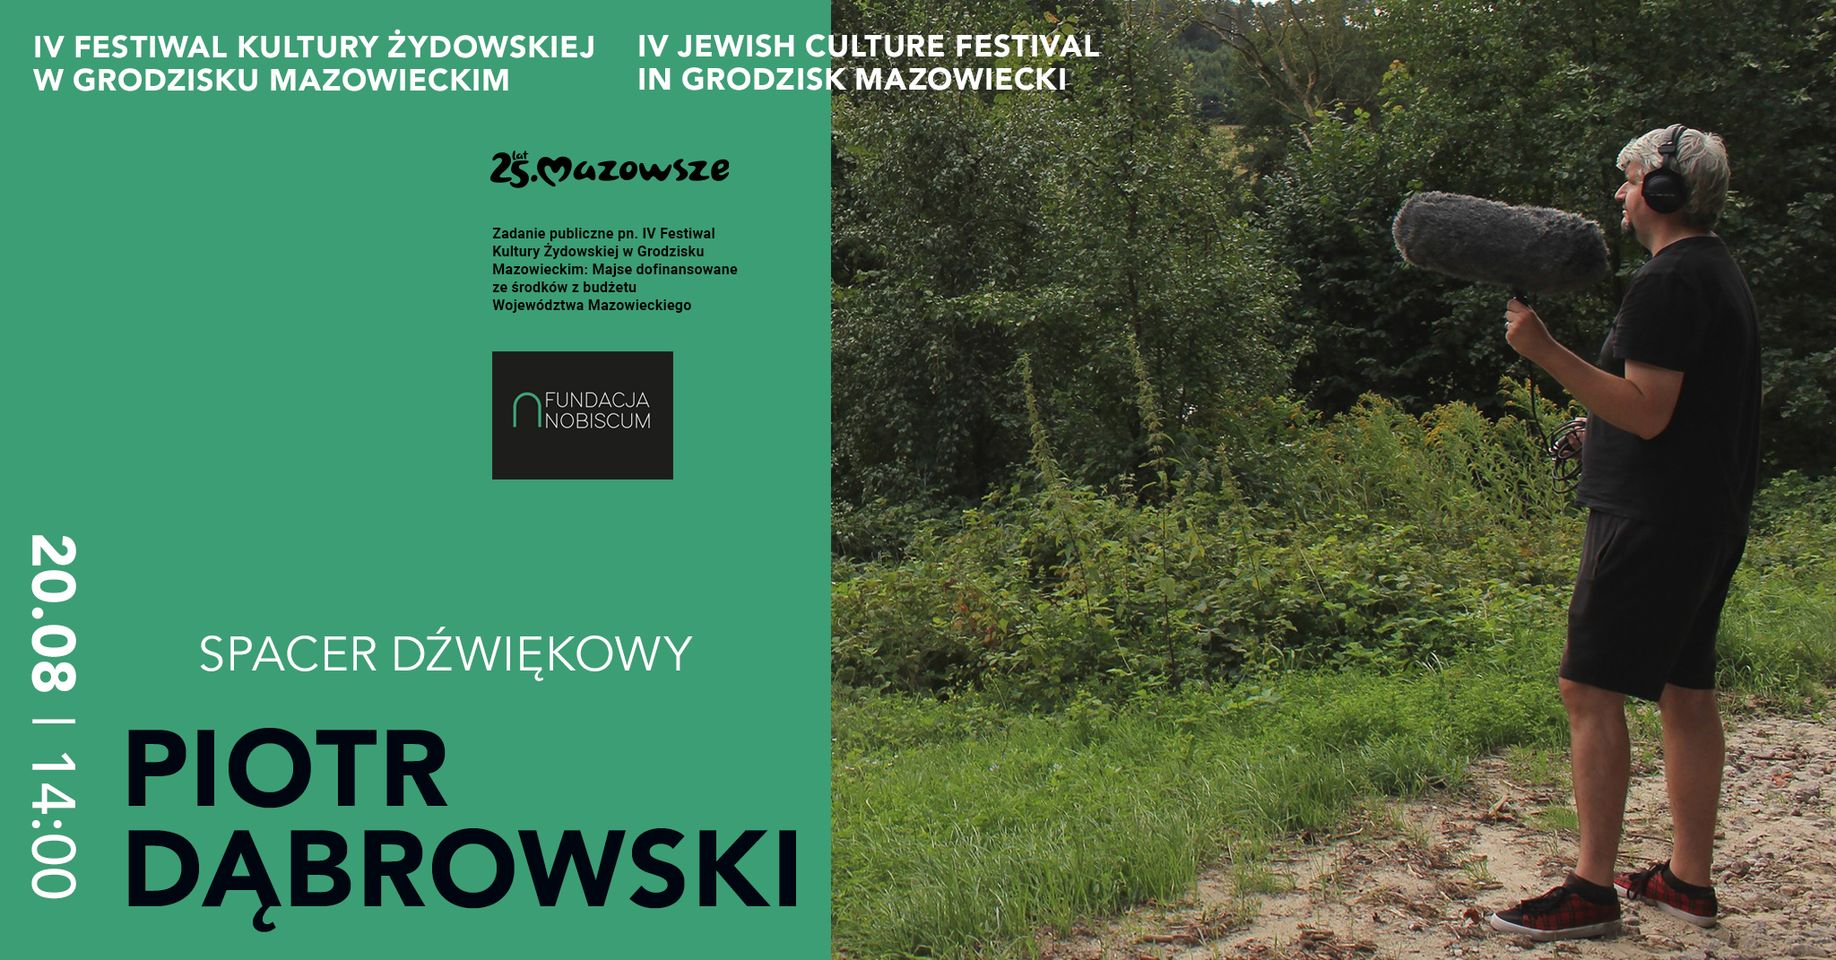 Spacer dźwiękowy w ramach Festiwalu Kultury Żydowskiej w Grodzisku Mazowieckim